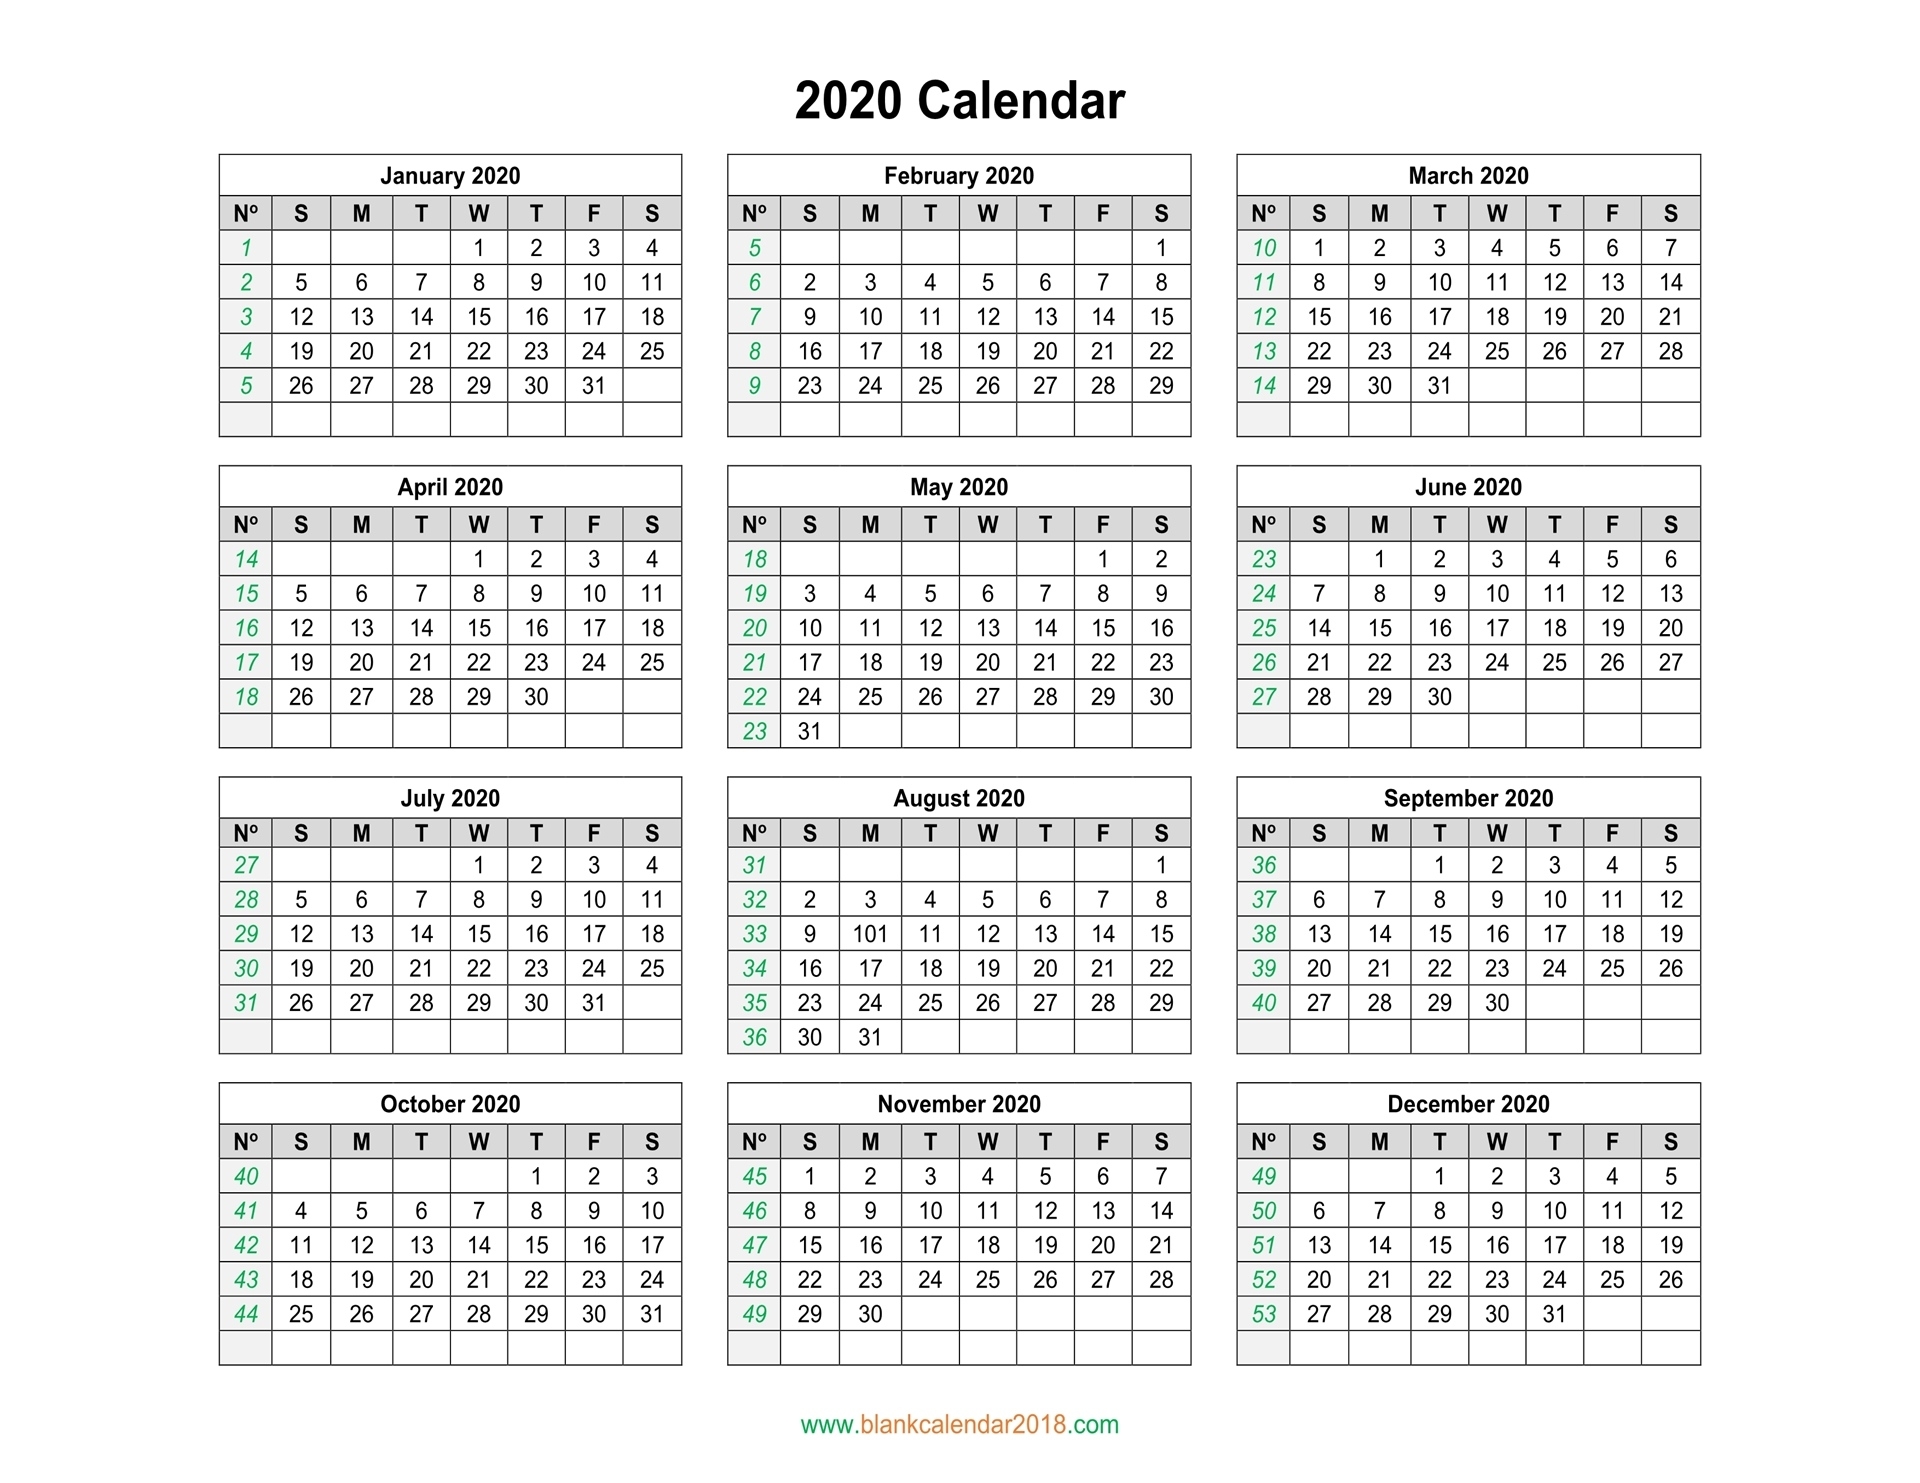 Blank Calendar 2020 2020 Calendar Template With Week Numbers